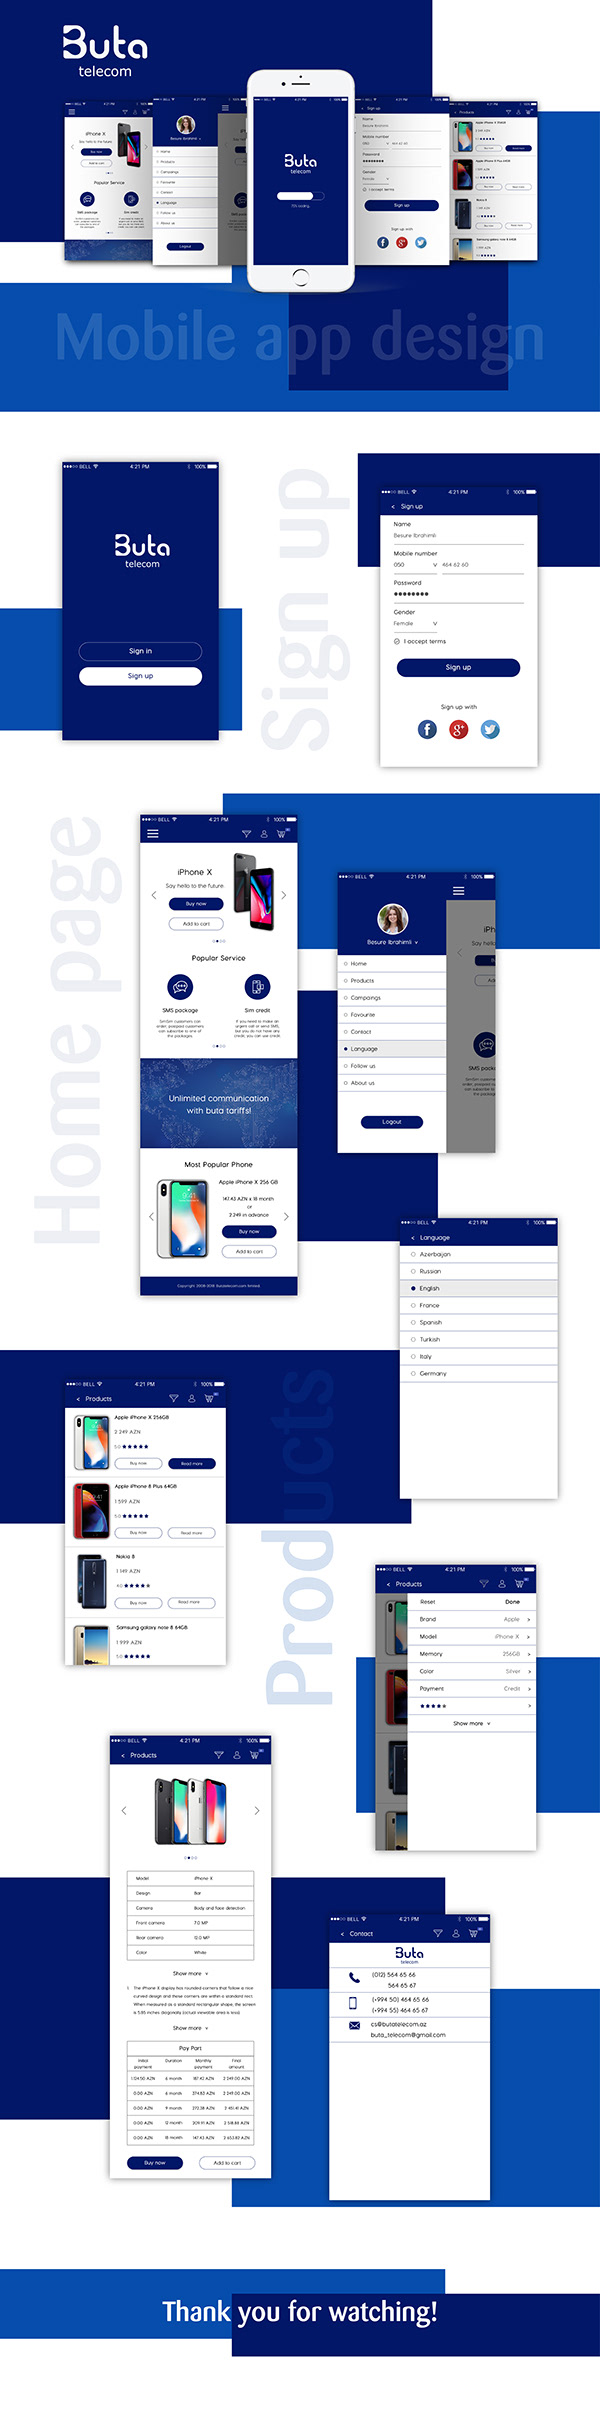 Buta telecom mobile app design